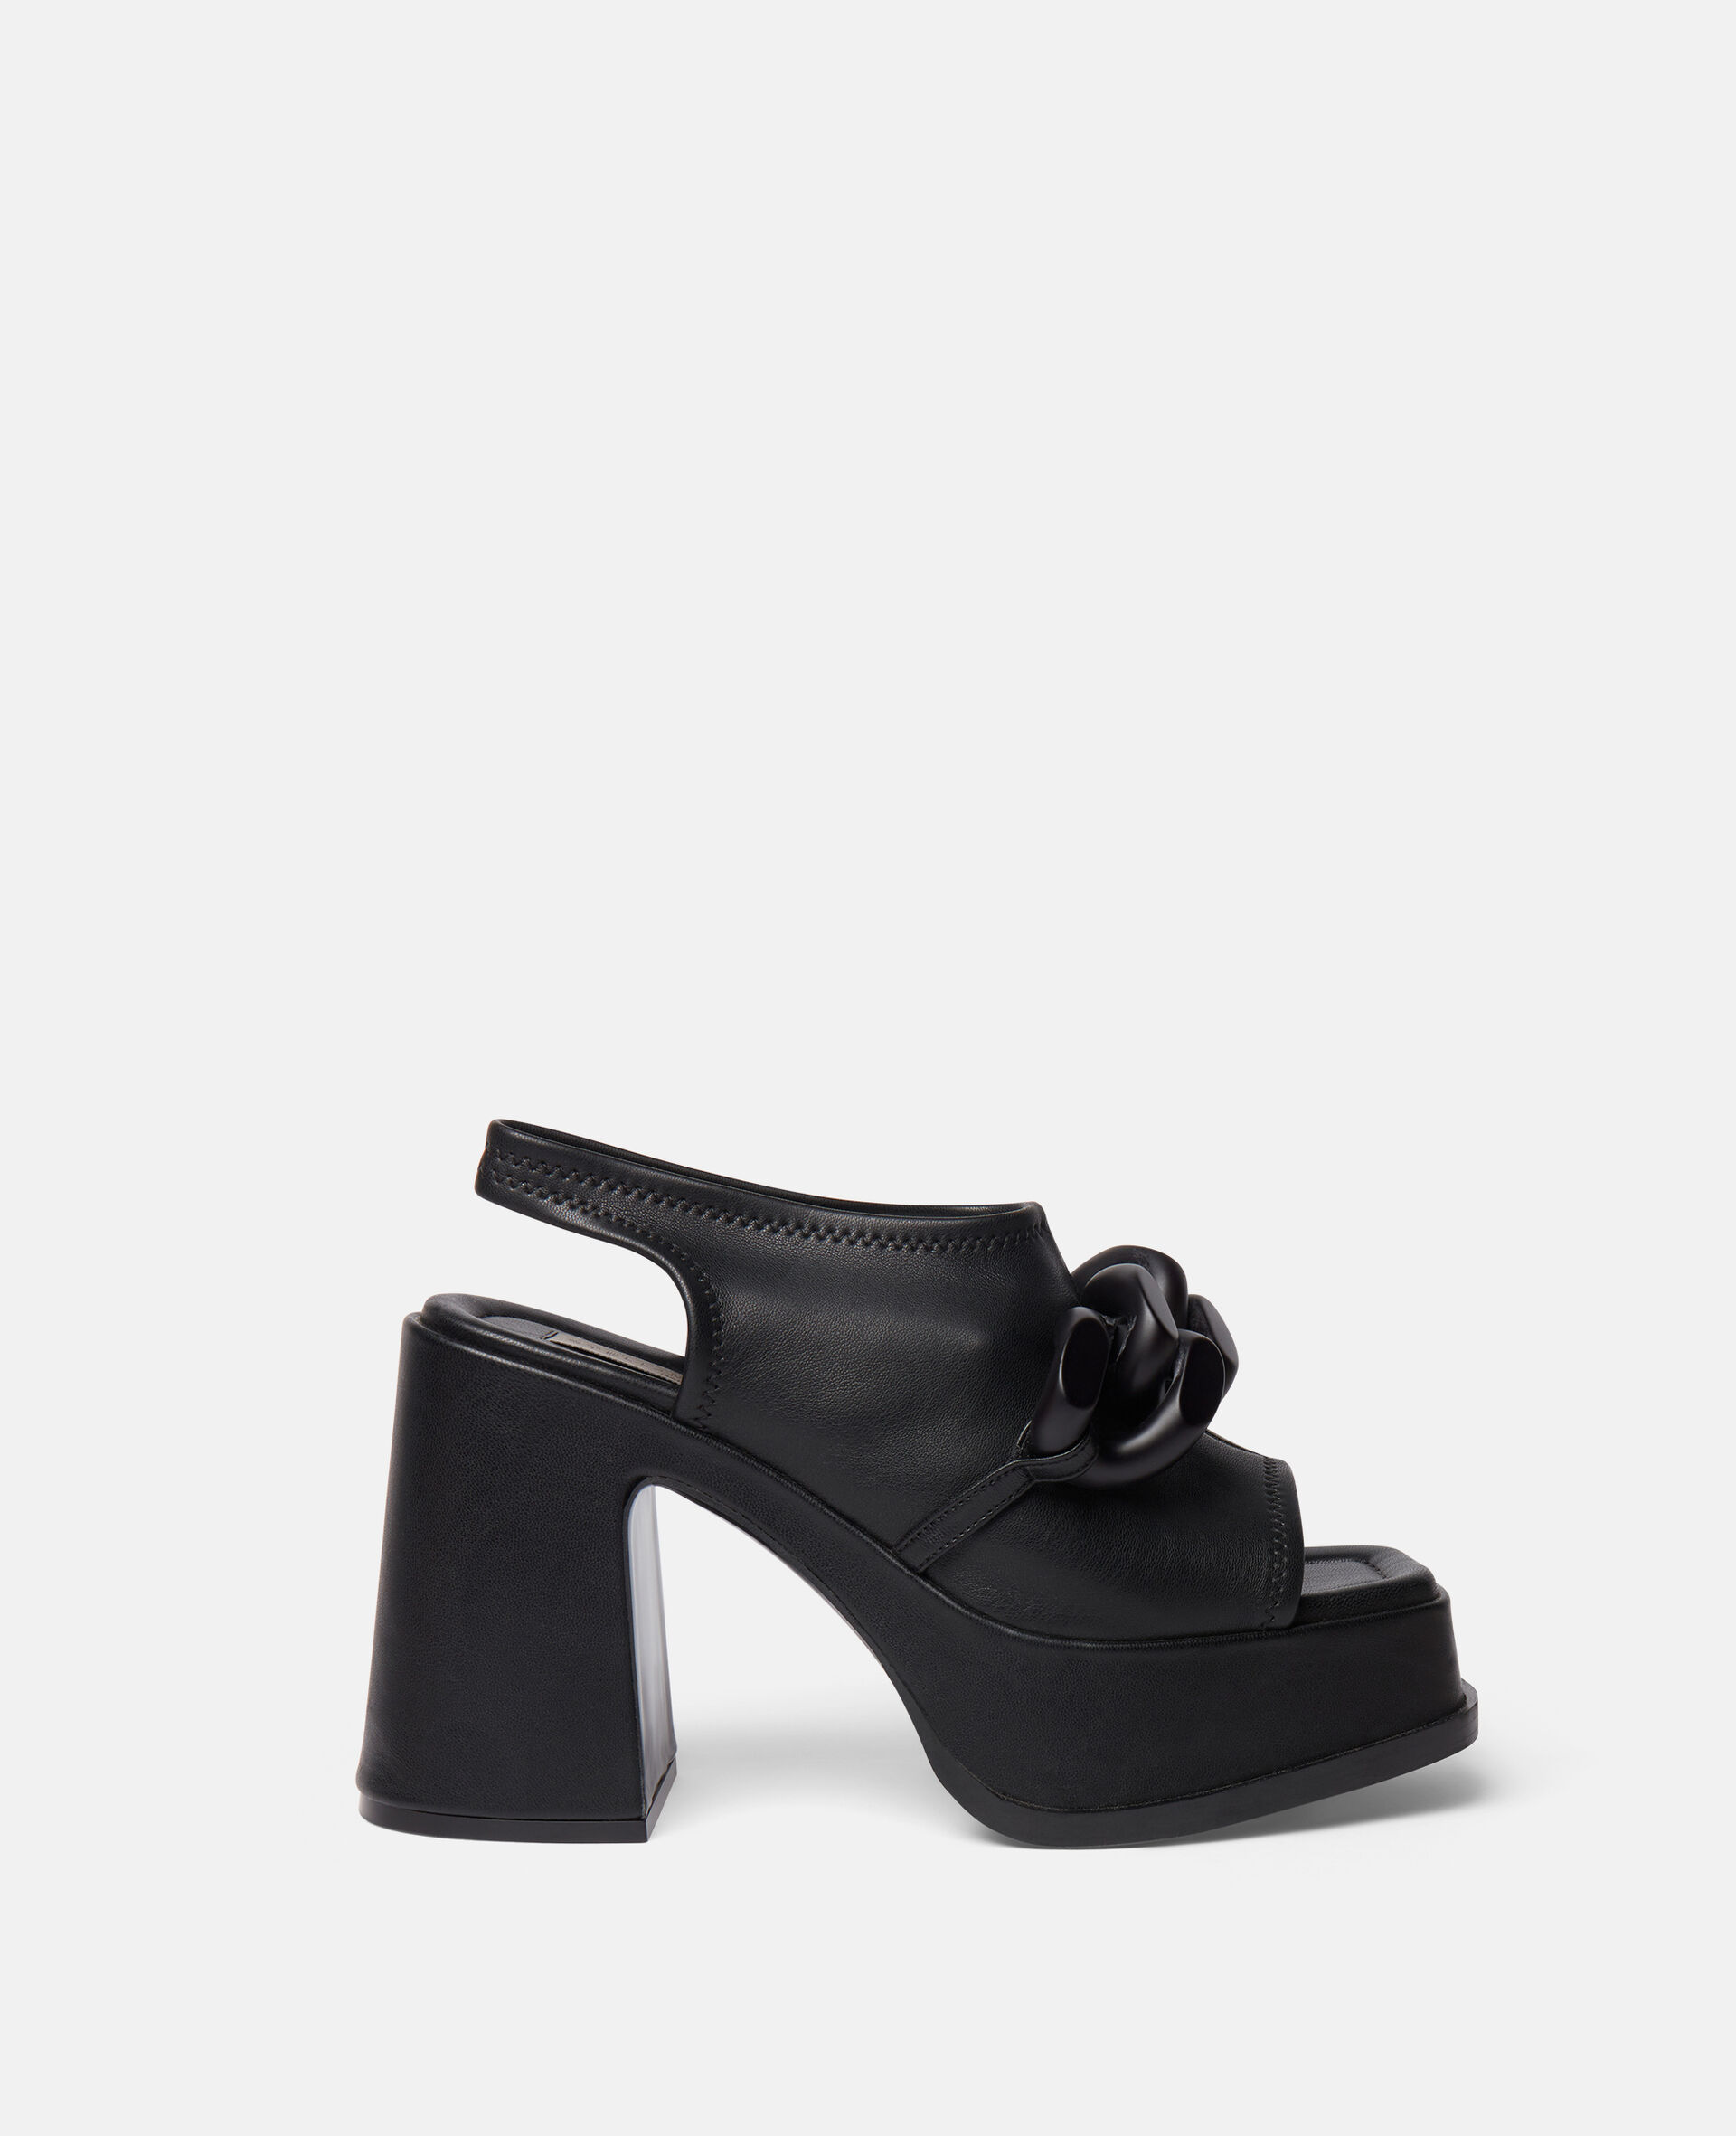 Skyla Chain Platform Sandals-Black-large image number 0